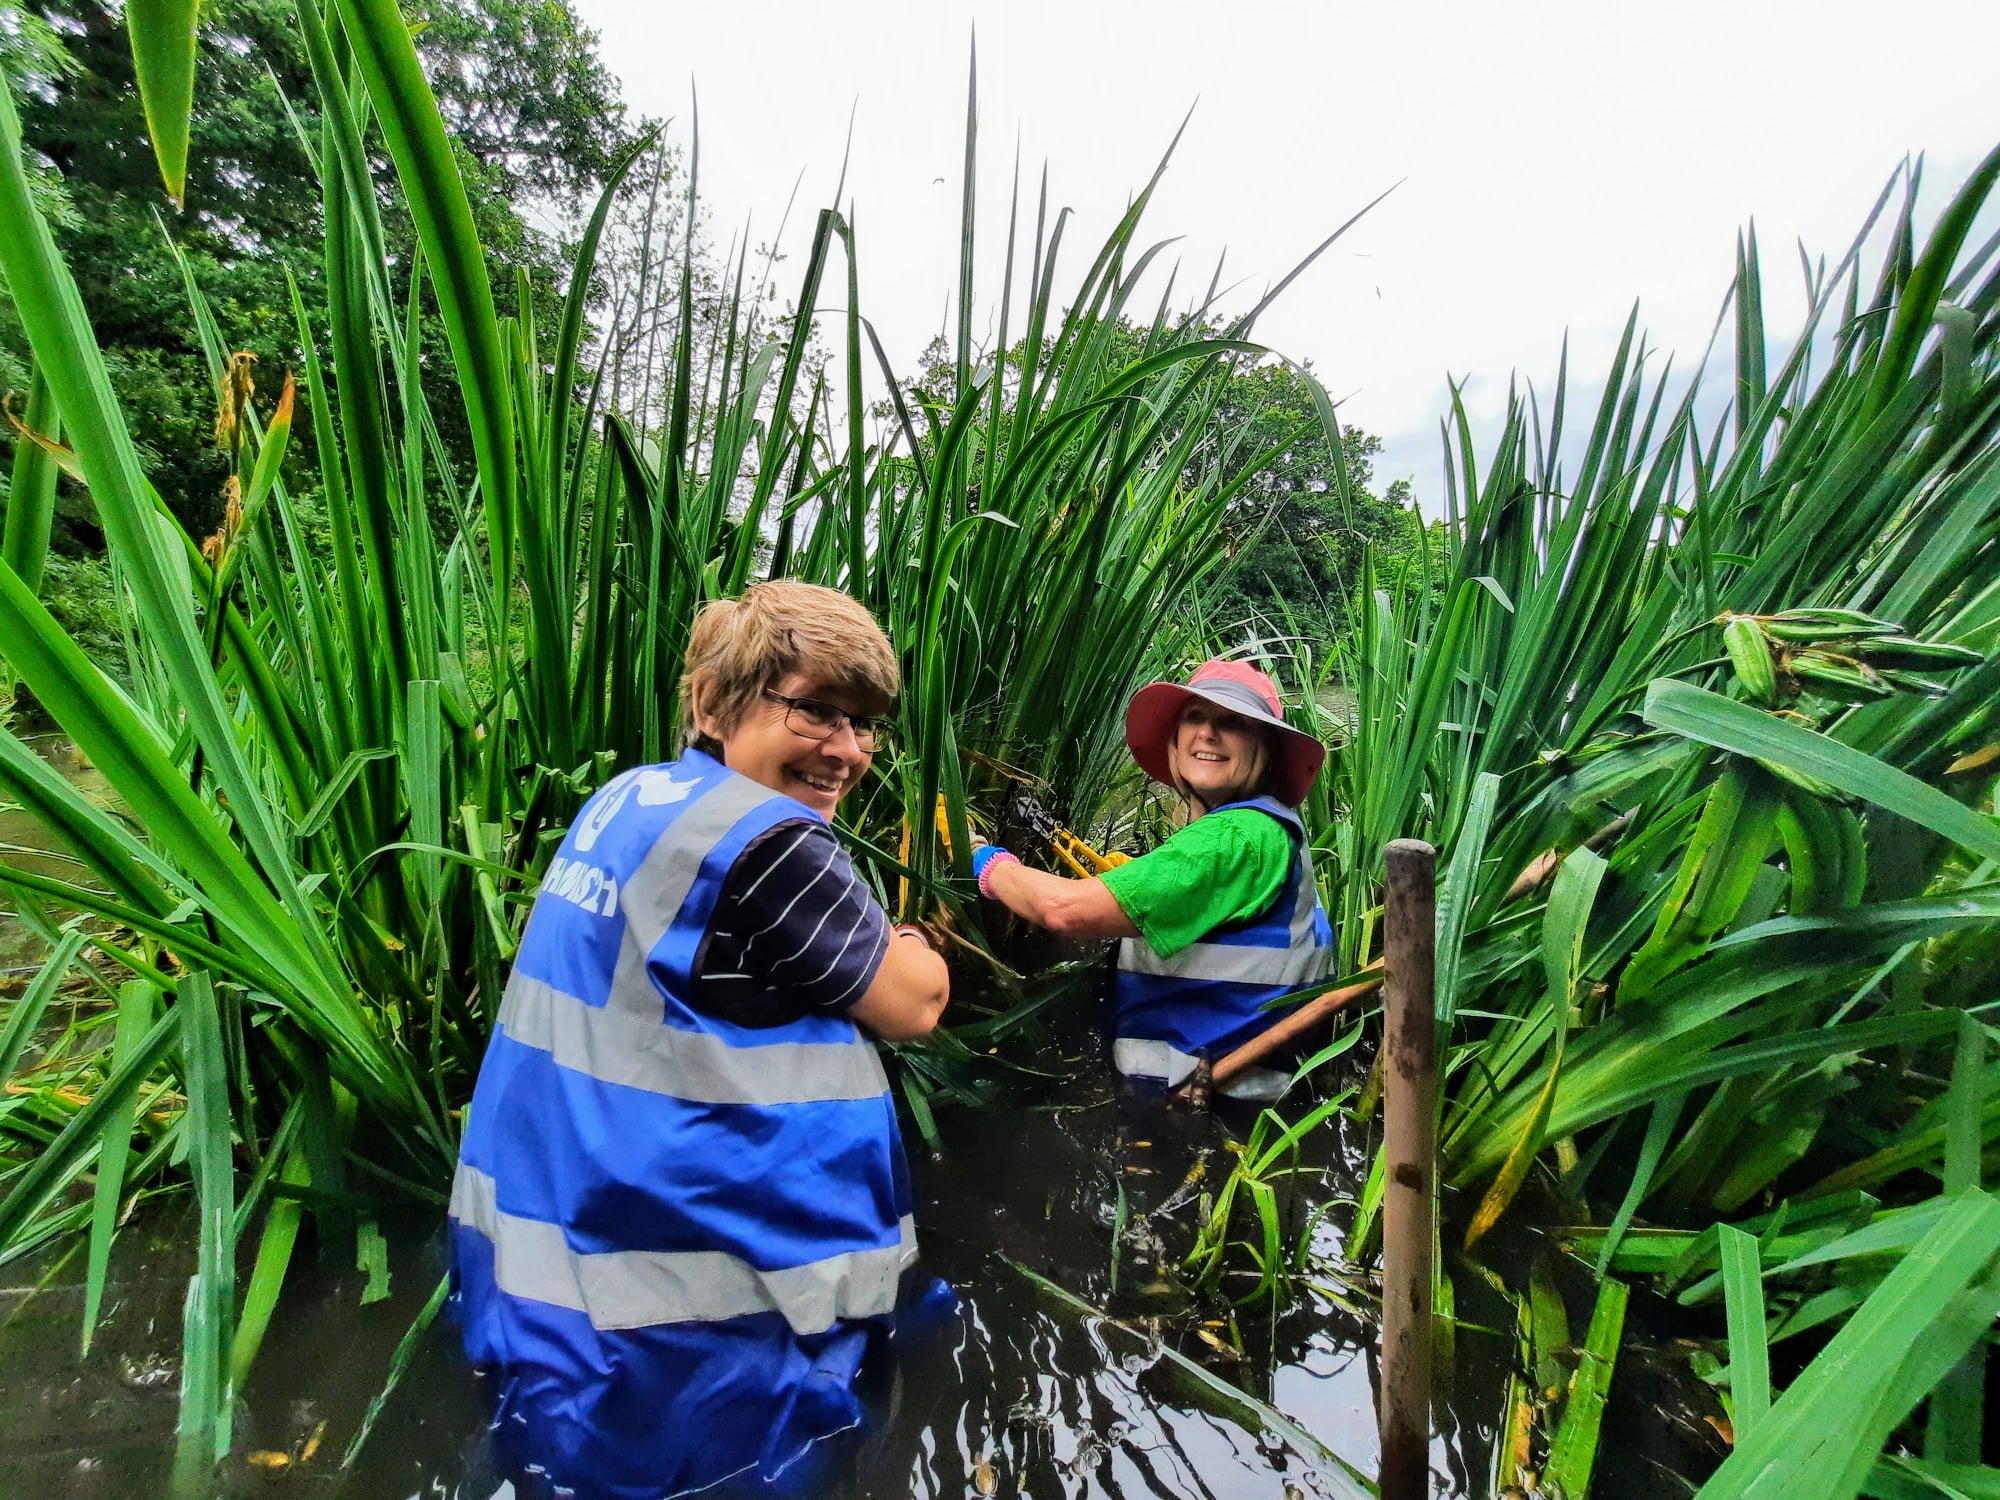 Two female volunteers in high-vis vests kneel in a wetland, managing vegetation.